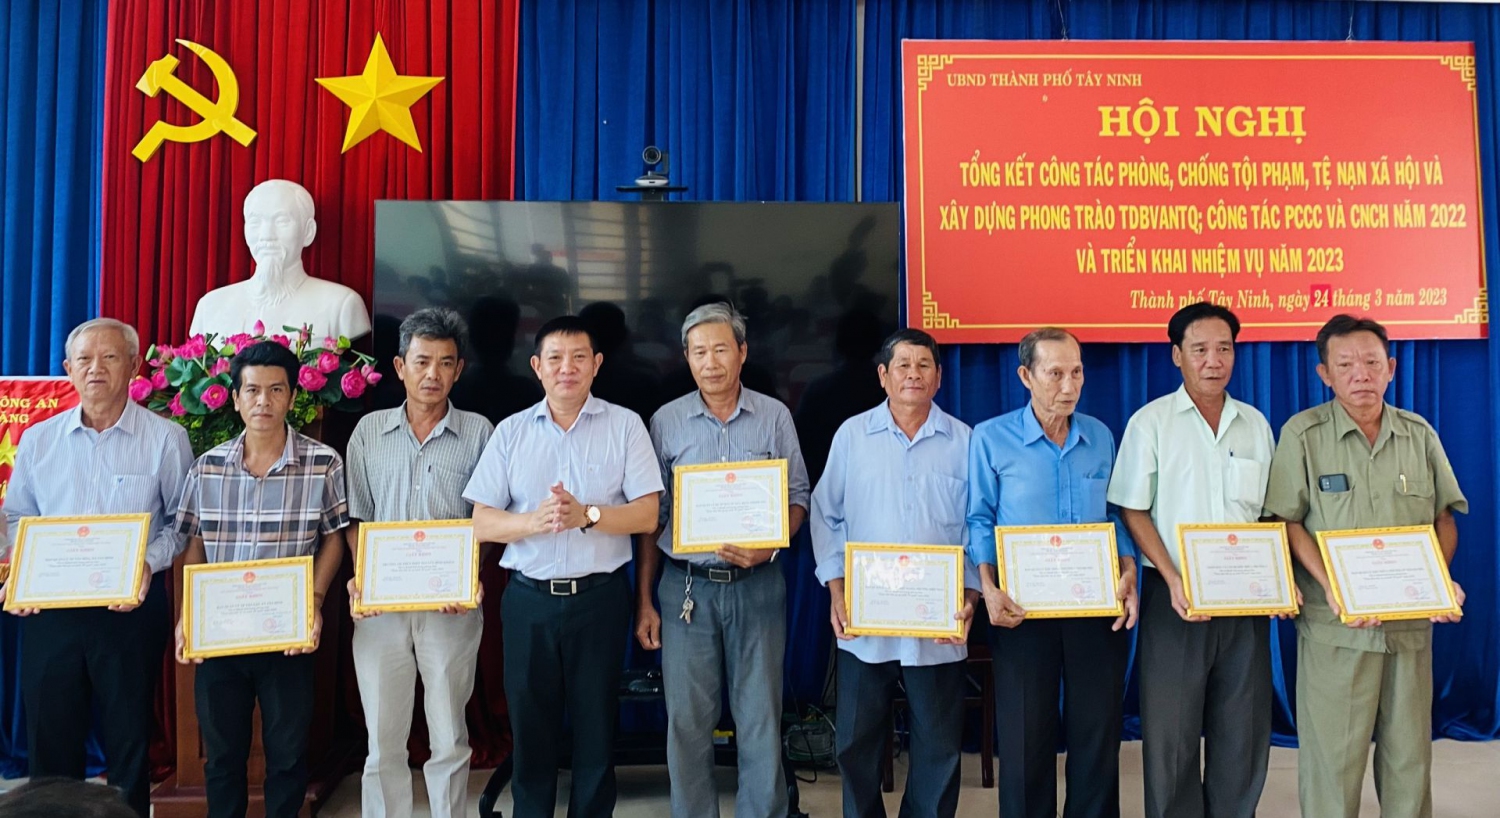 Ông Phạm Trung Chánh – Chủ tịch UBND thành phố khen thưởng cho các tập thể có thành tích trong phong trào “Toàn dân bảo vệ an ninh Tổ quốc” năm 2022